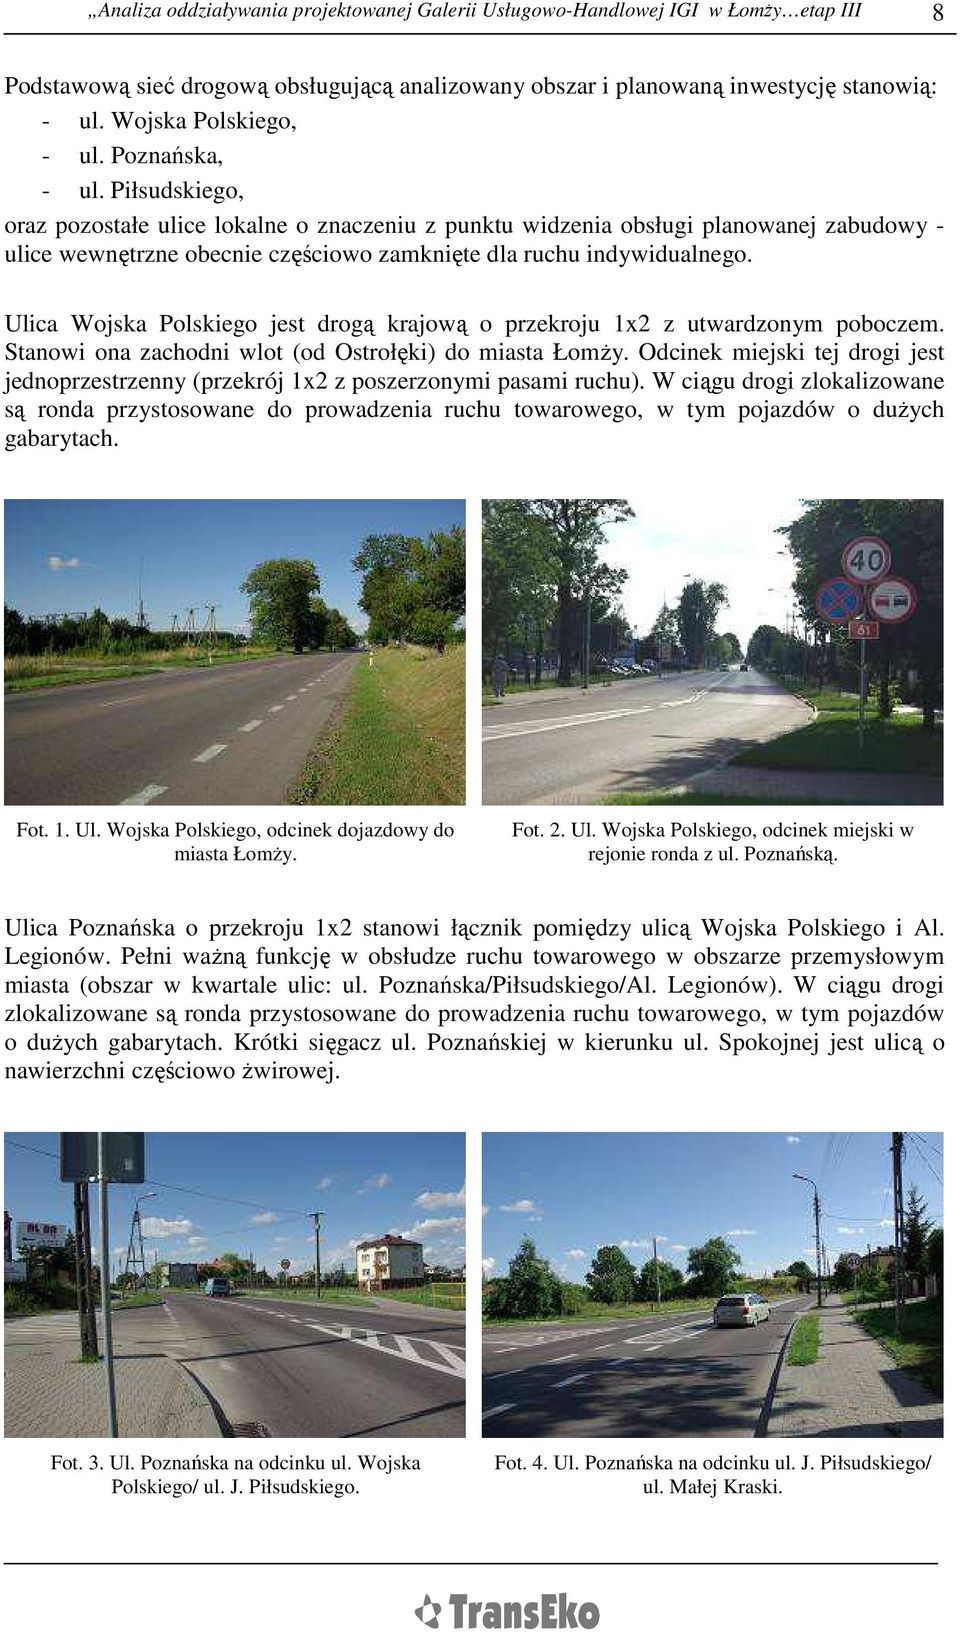 Piłsudskiego, oraz pozostałe ulice lokalne o znaczeniu z punktu widzenia obsługi planowanej zabudowy - ulice wewnętrzne obecnie częściowo zamknięte dla ruchu indywidualnego.